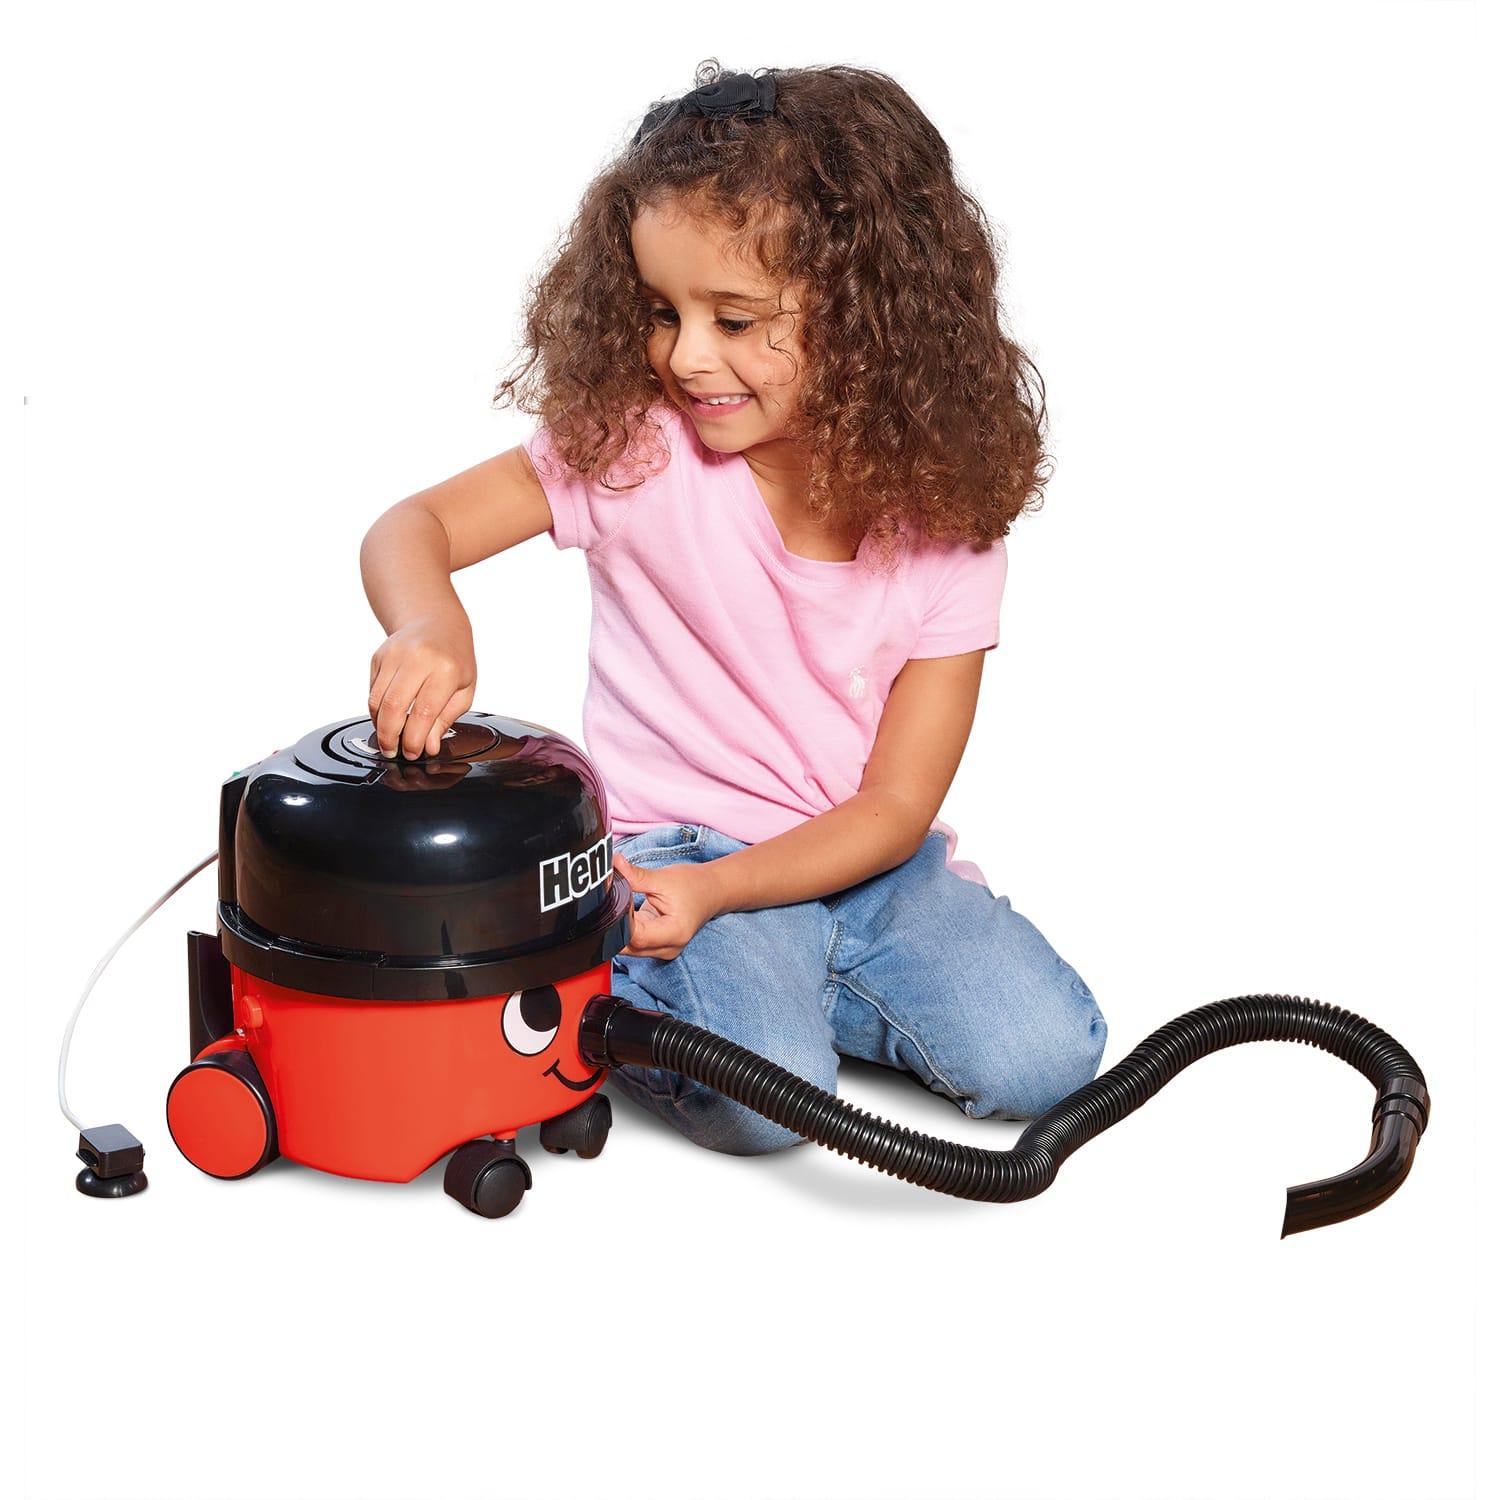 casdon toy vacuum cleaner